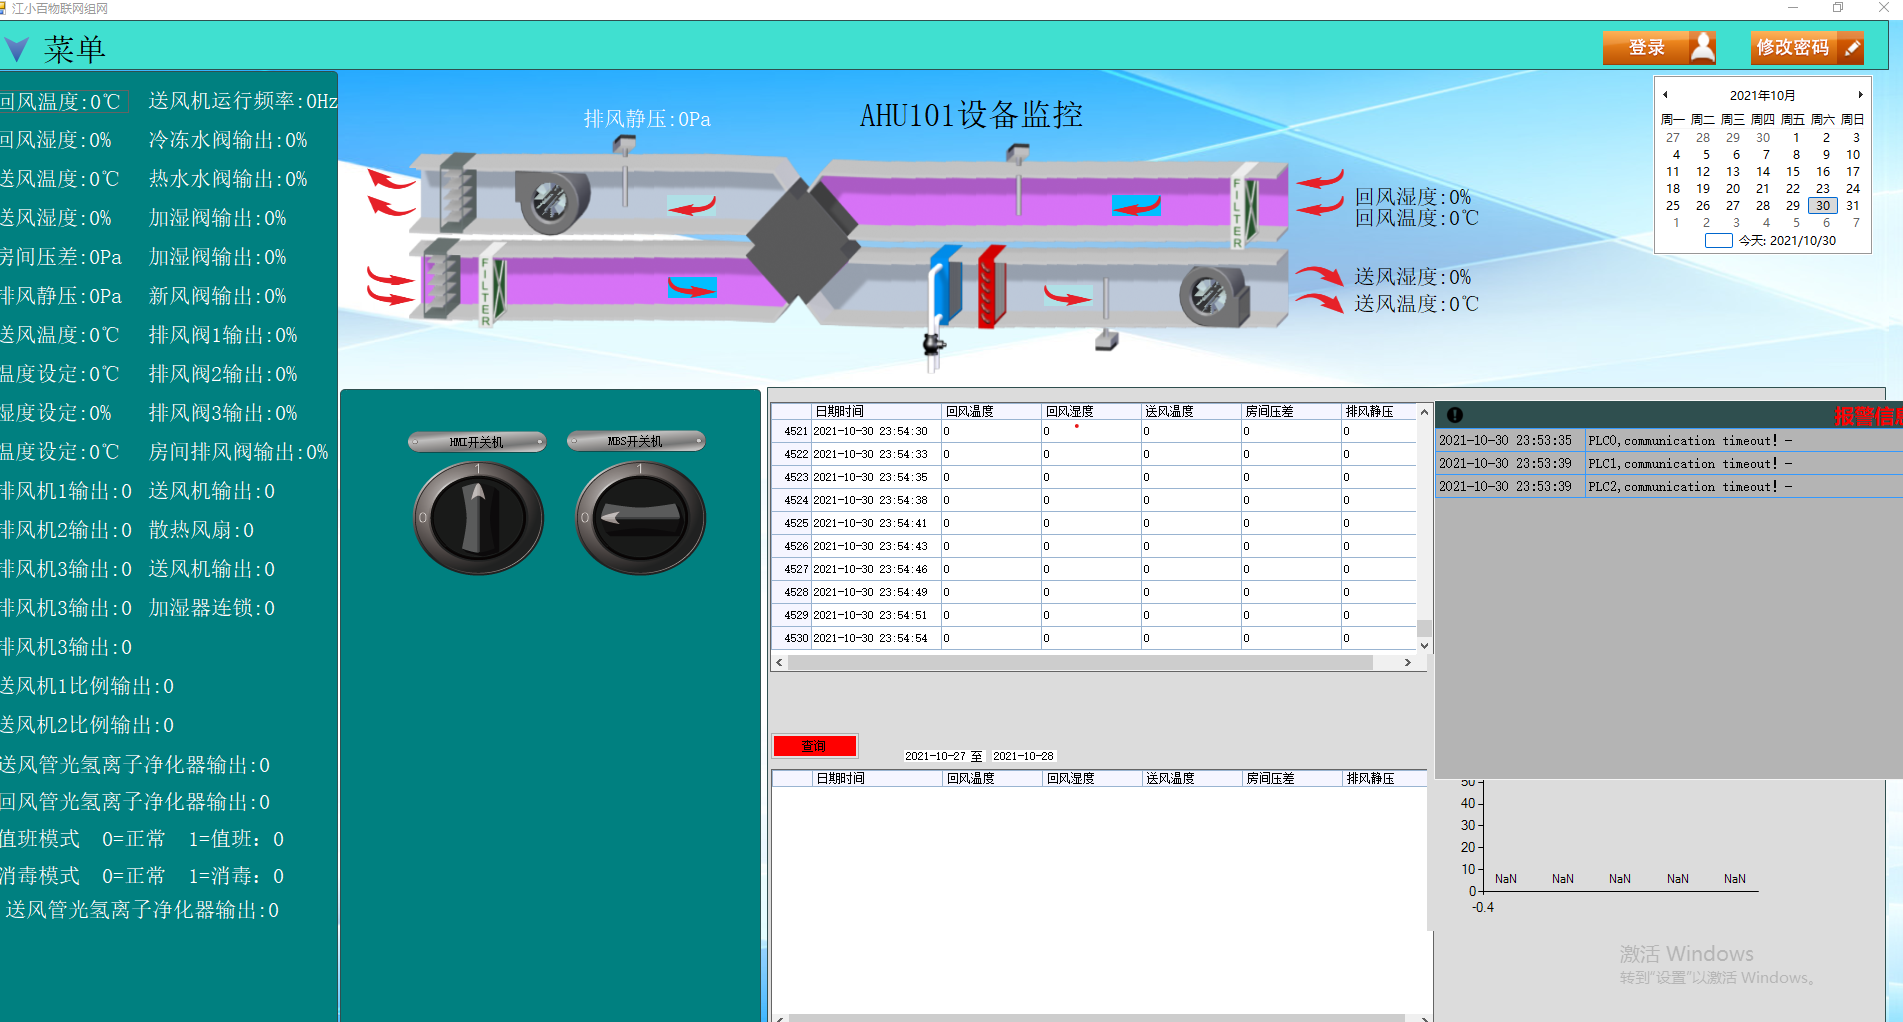 控制柜PLC系统组合风柜净化系统DDC控制系统组态软件上位机MES系